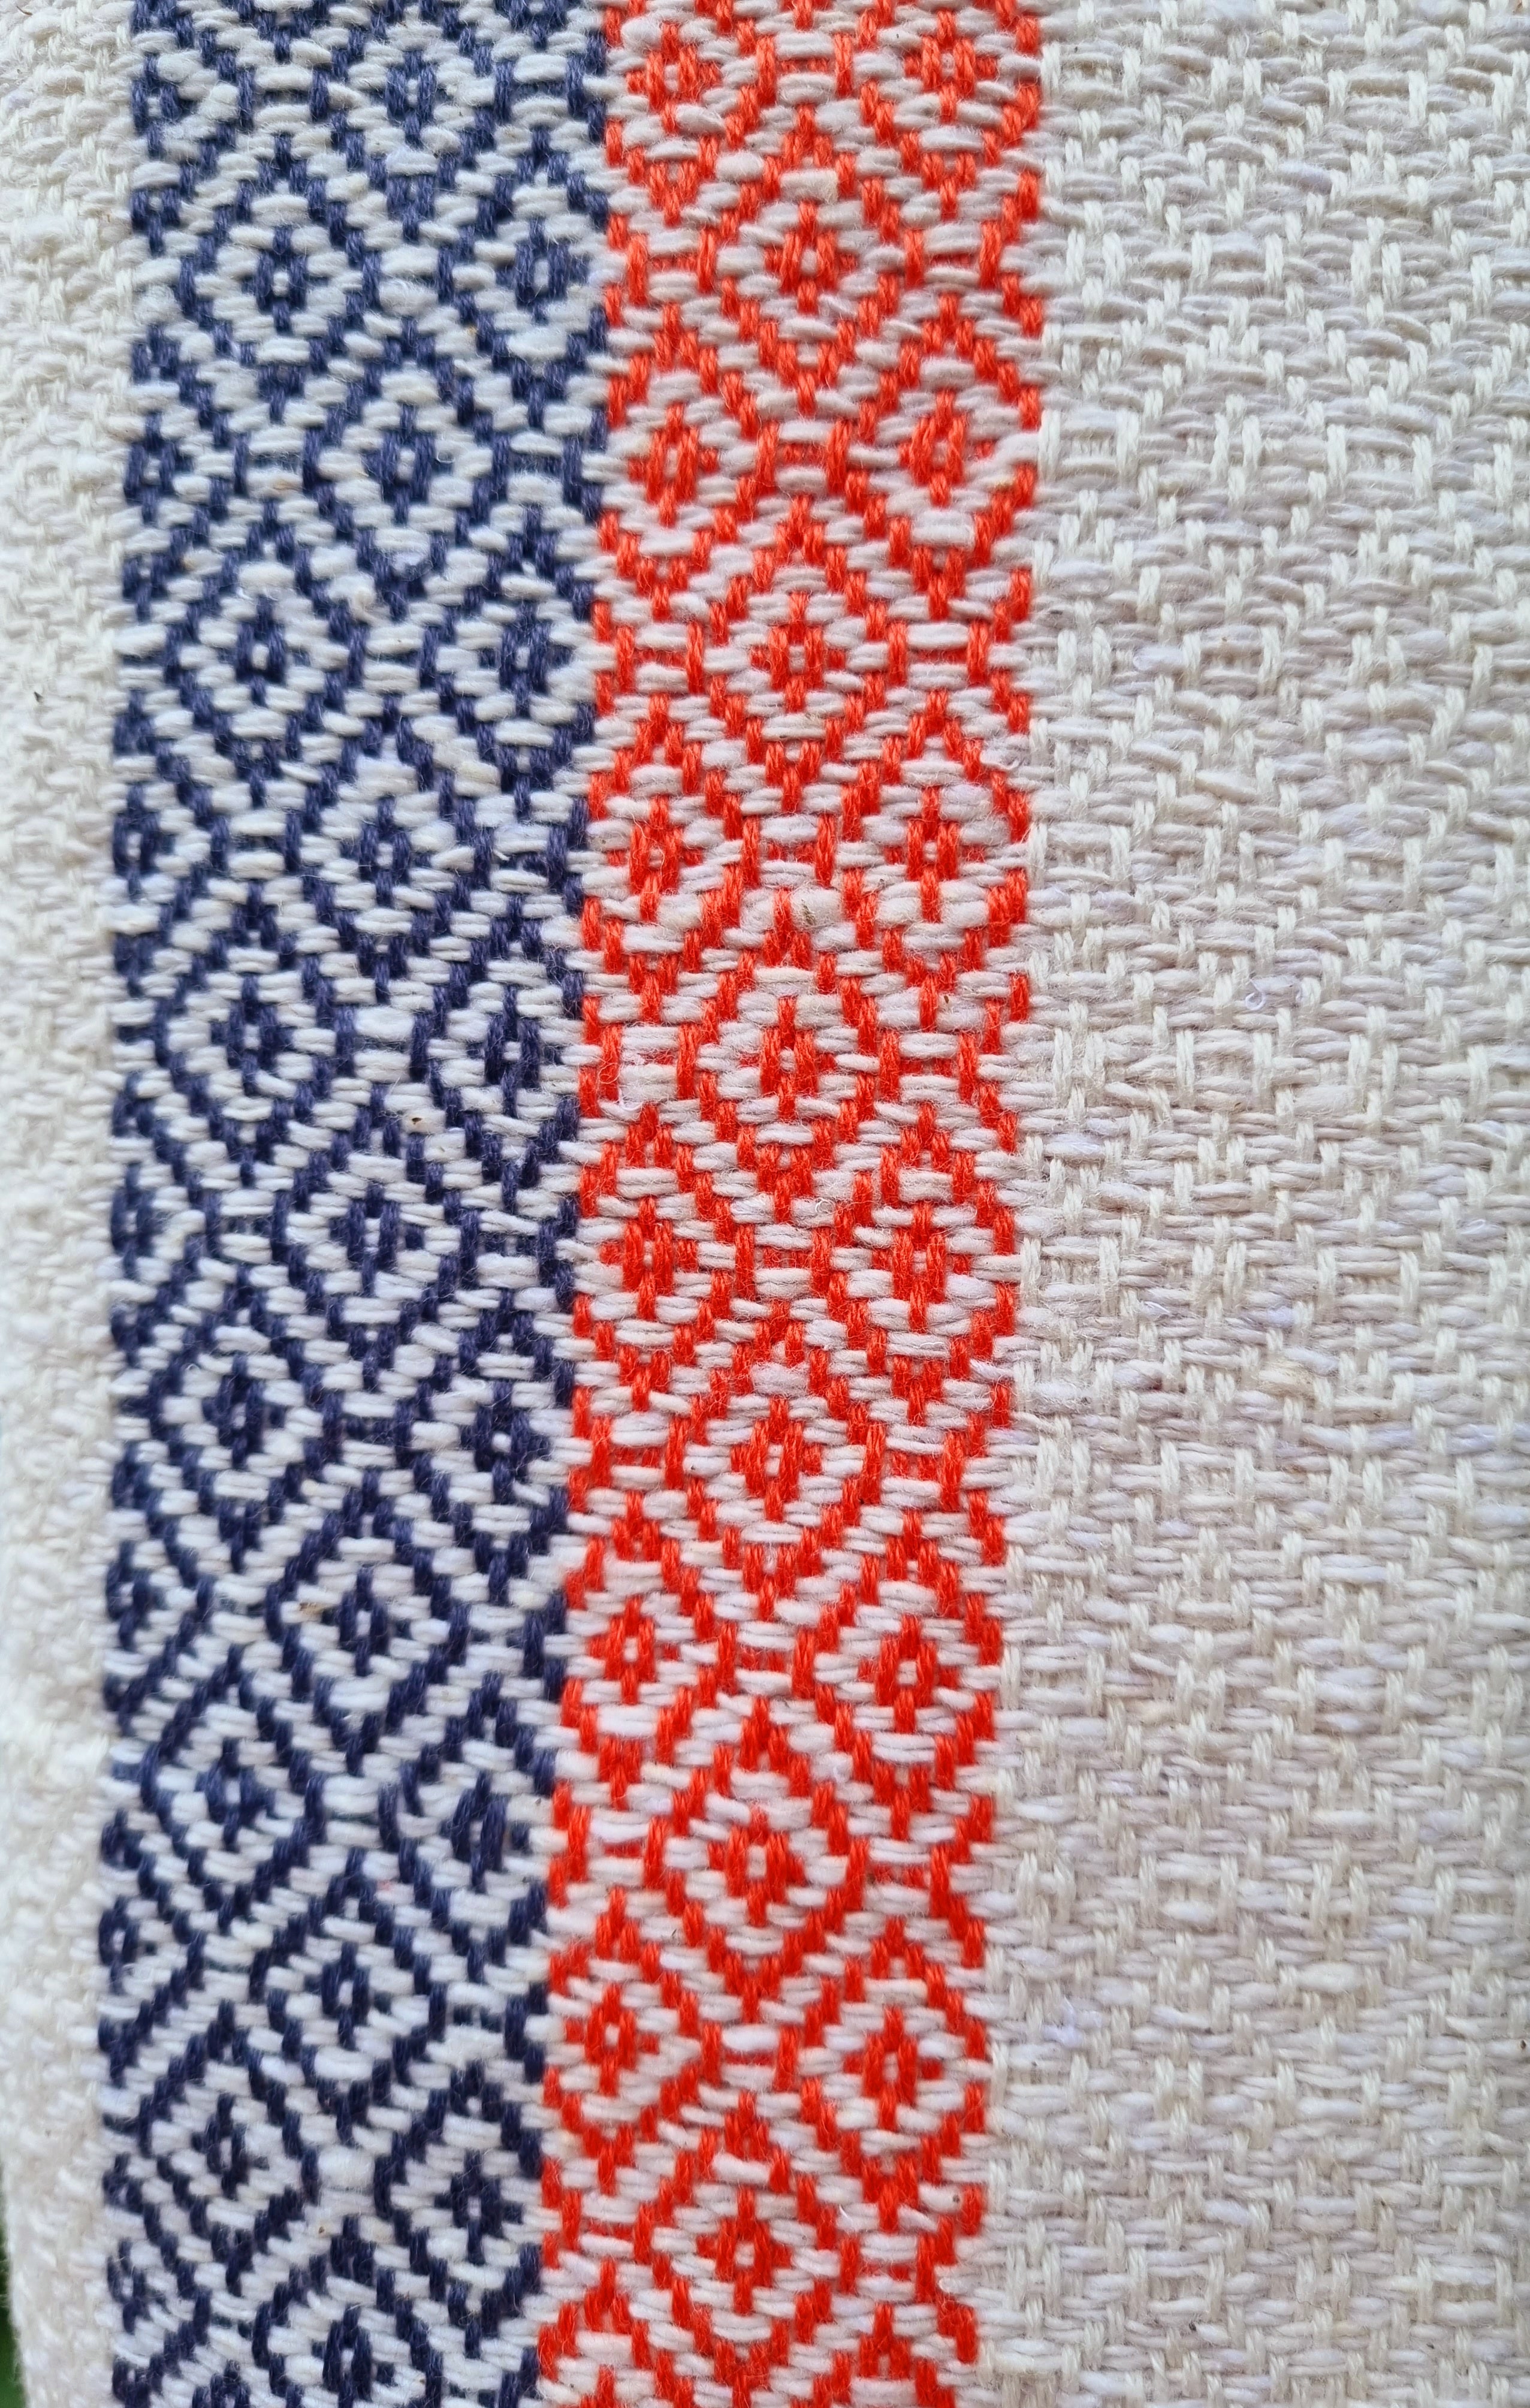 Handwoven Thai cotton blankets